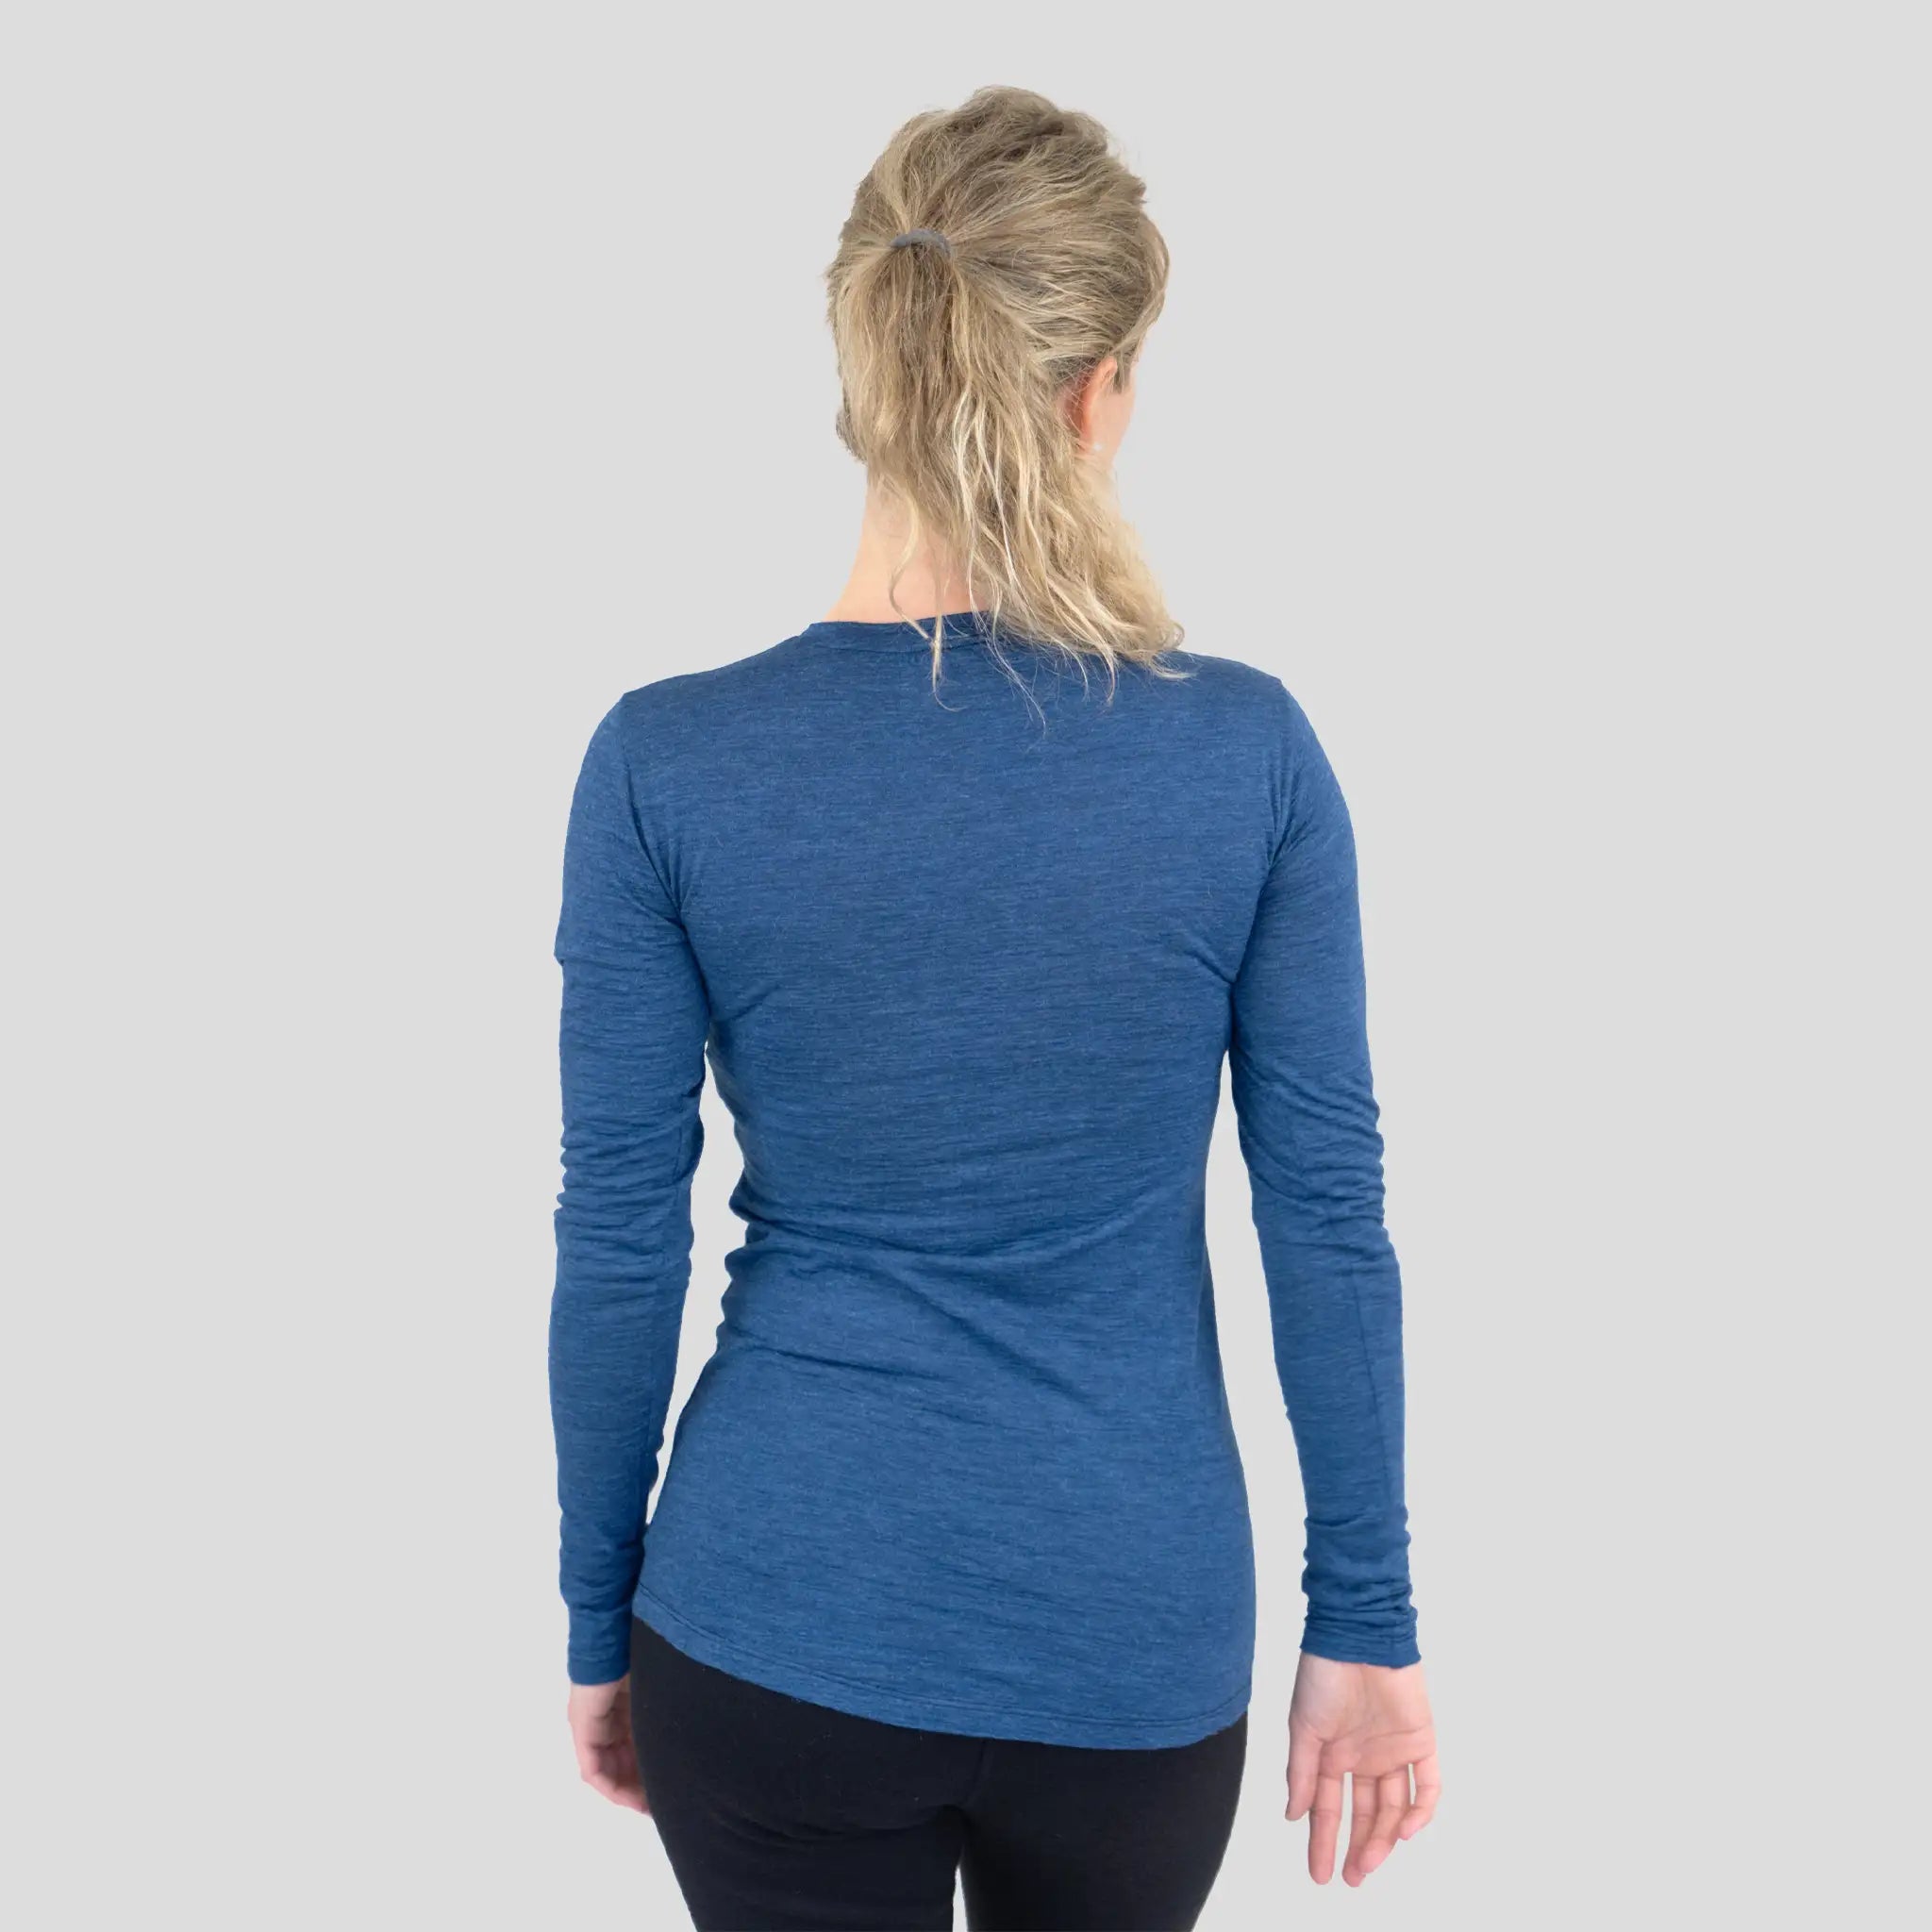 Women's Alpaca Wool Long Sleeve Shirt: 160 Ultralight color Natural Blue